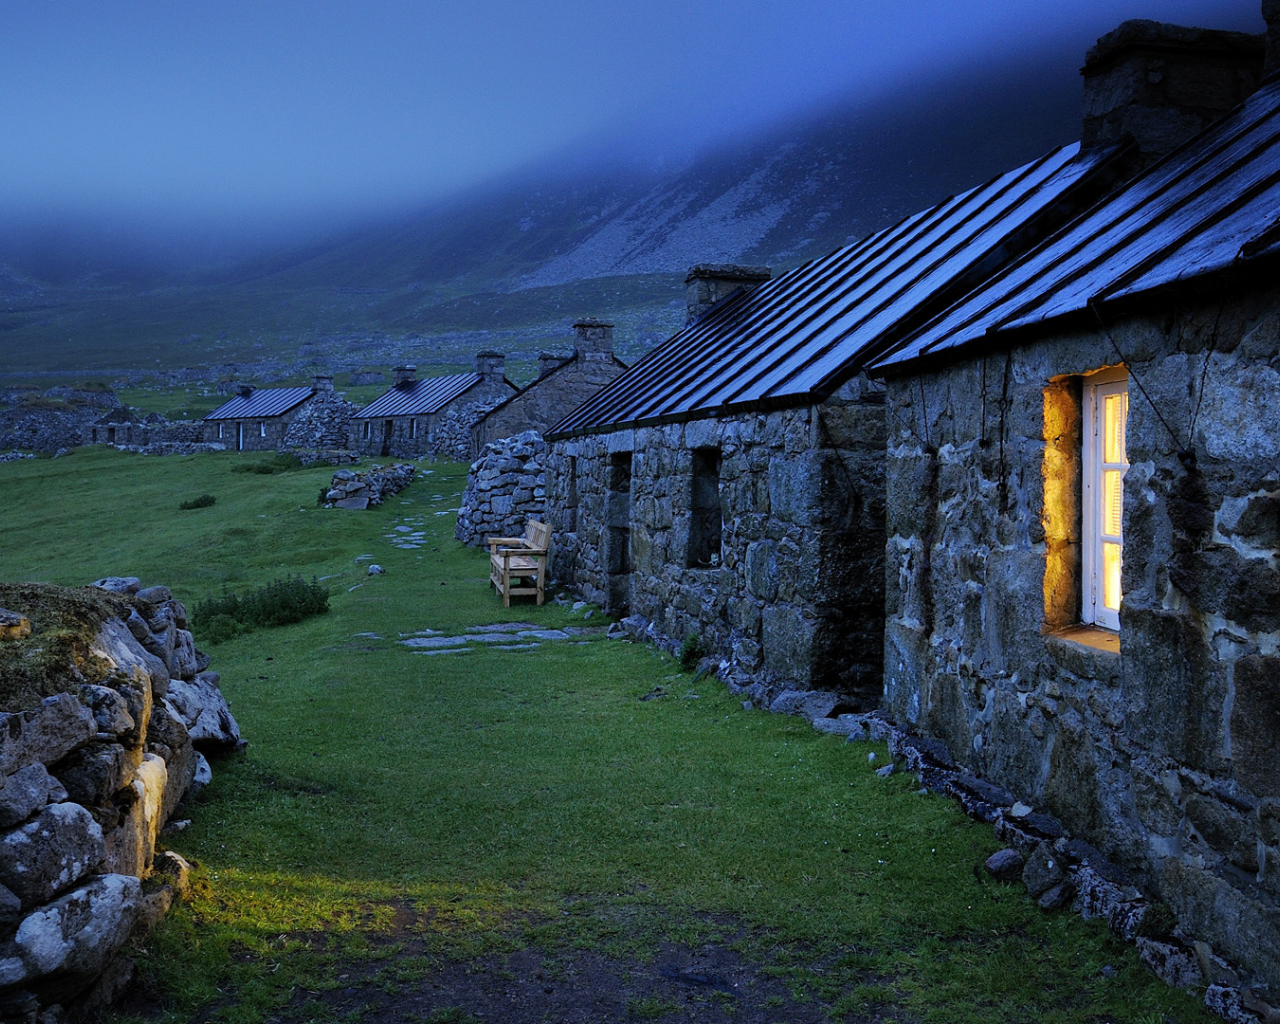 крыши, свет, камни, окно, зеленая трава, строения, каменные домики